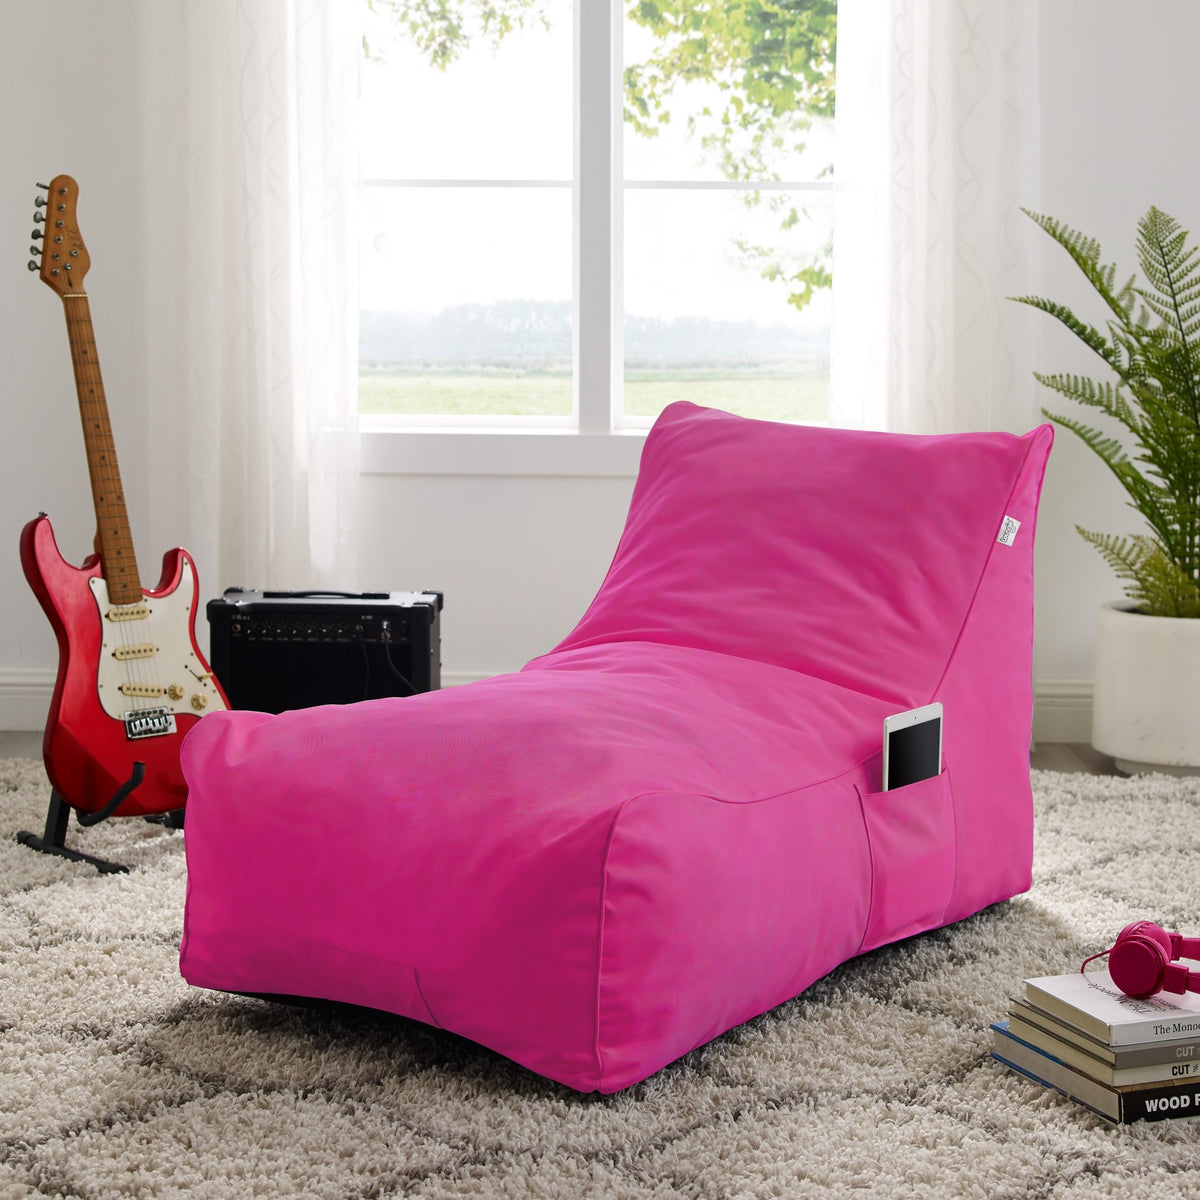 Bean Bag Chair/ Foam Sofa/ Lounge Chair/ Sleeper Couch/ Memory Foam Sofa/ Floor Chair - Resty Bean Bag Chair Sleeper Memory Foam Sofa